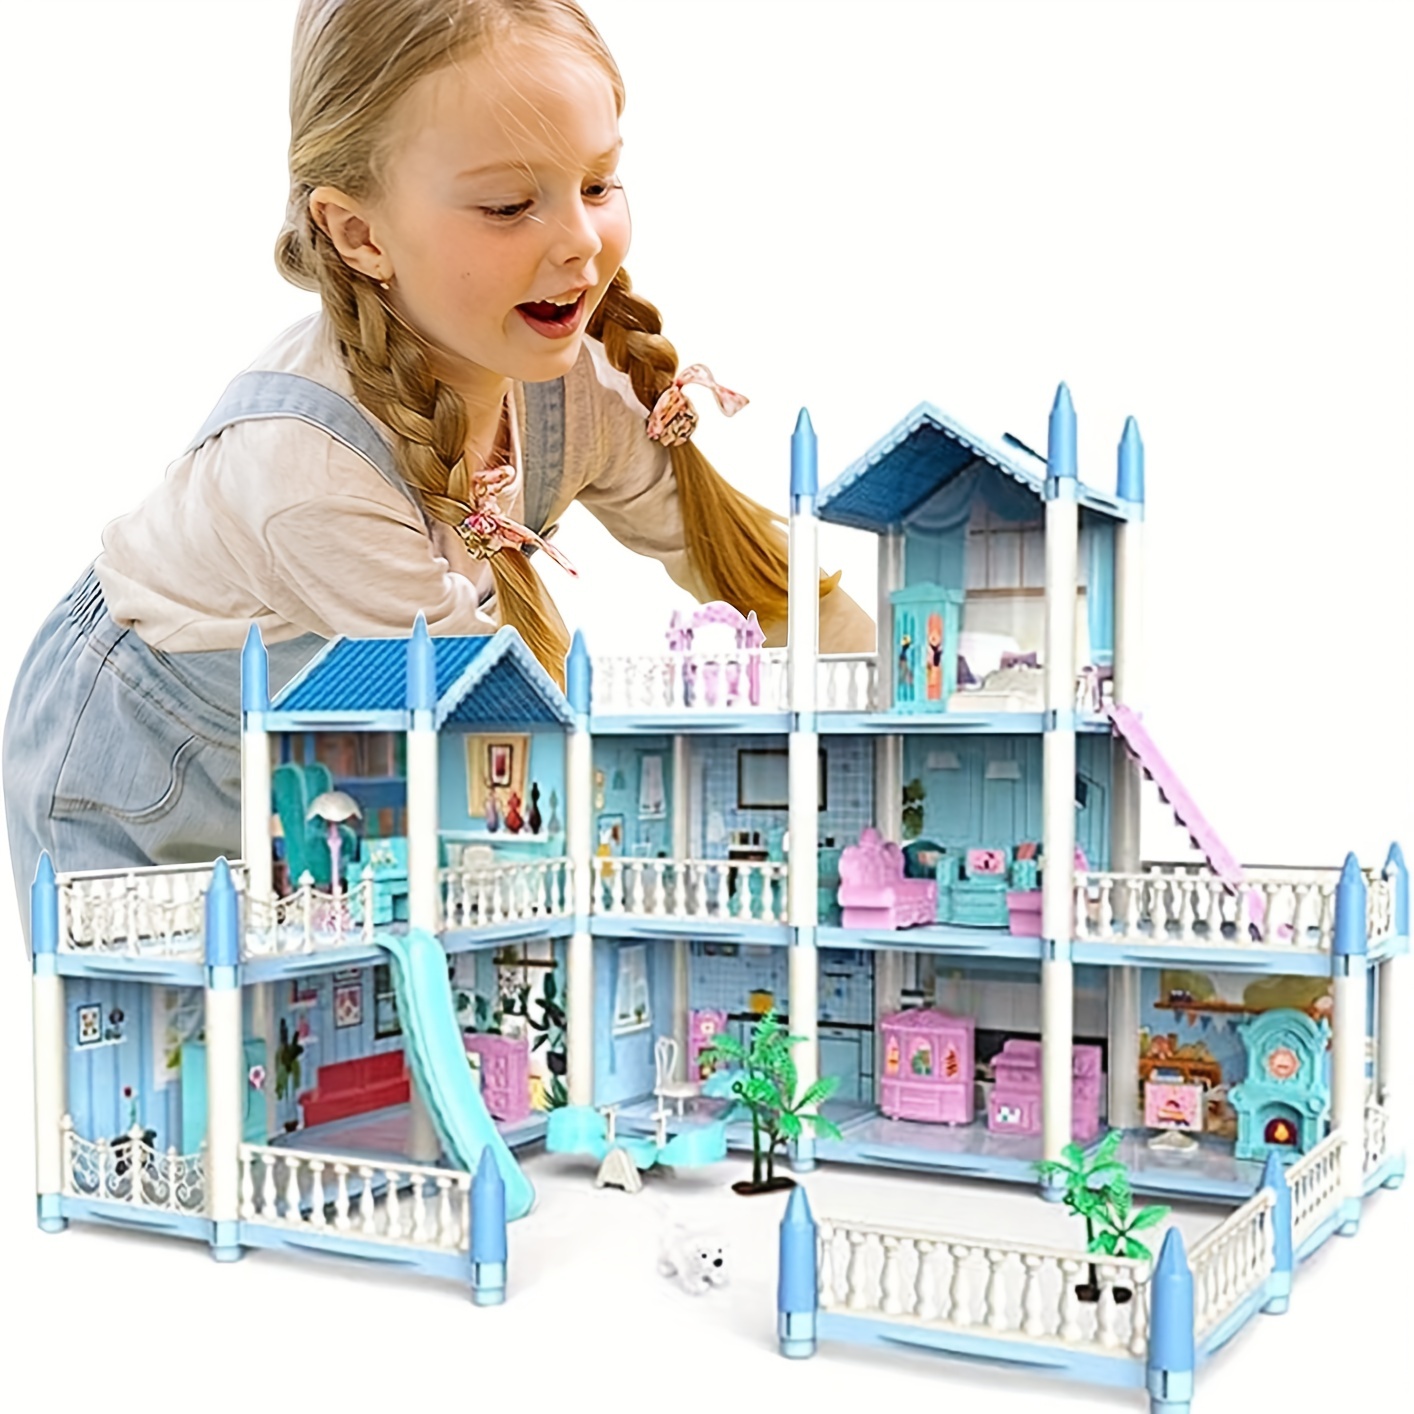 Maison de poupée avec accessoires | Dream house